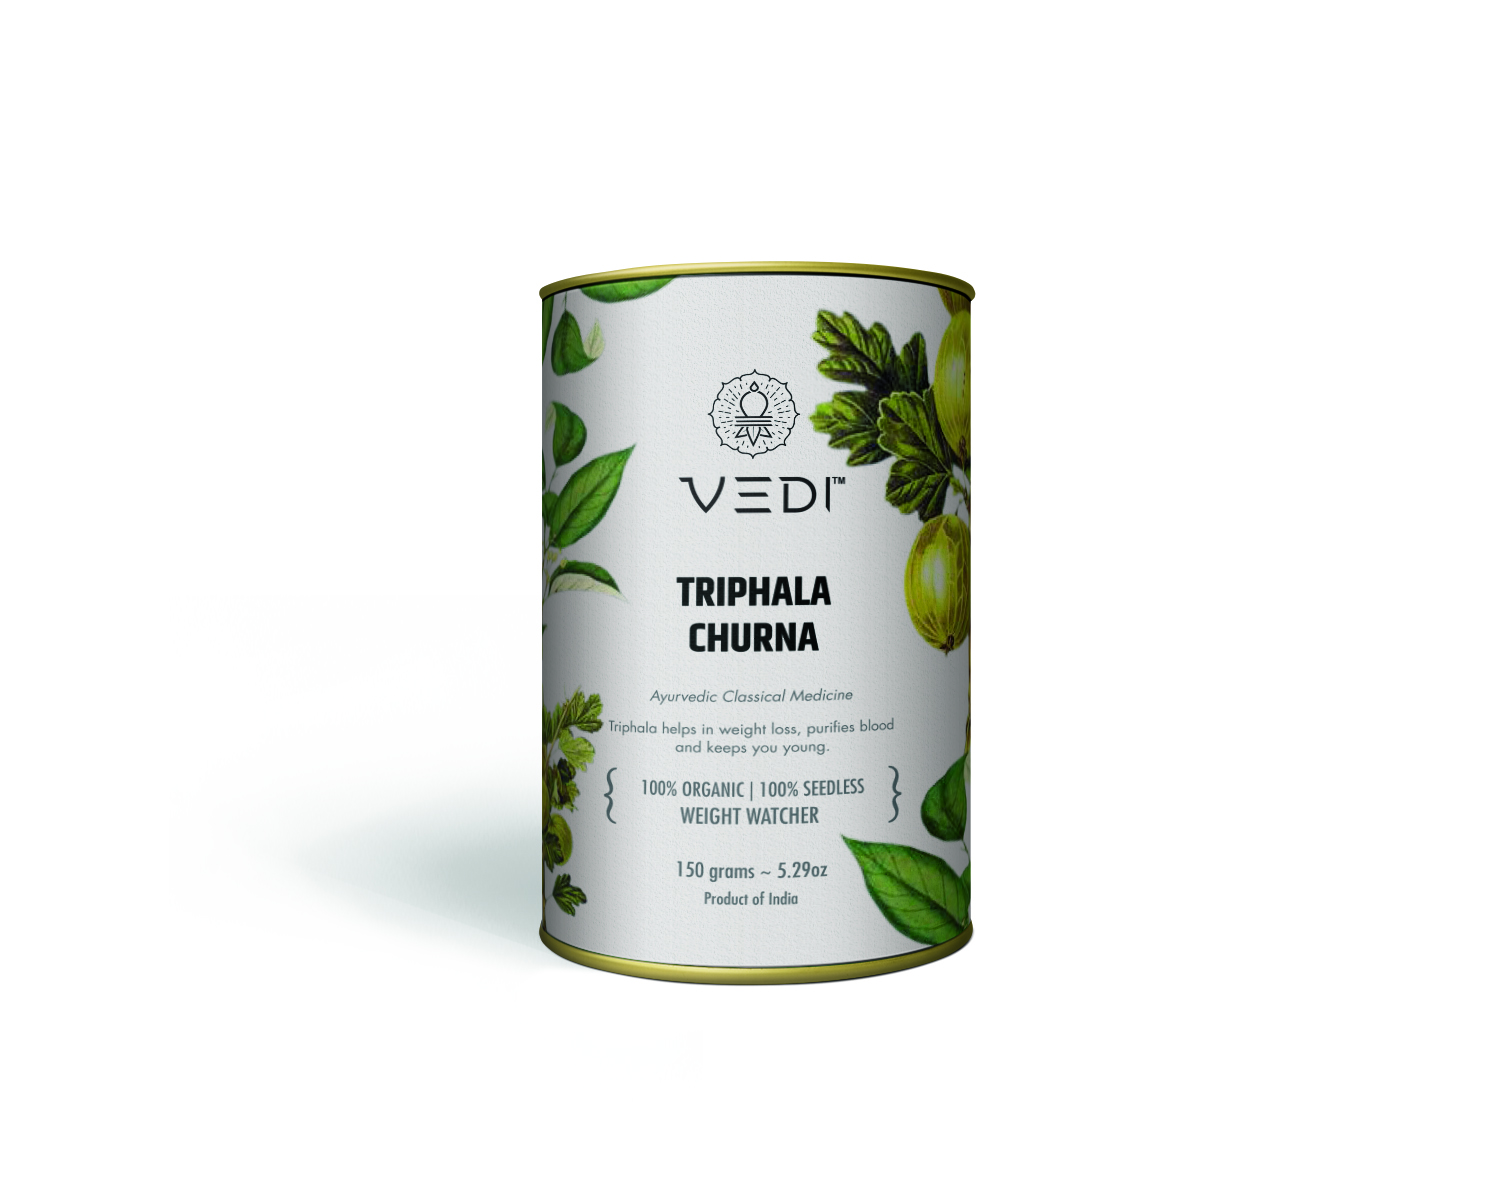 Buy Vedi Herbal Triphala Churna at Best Price Online